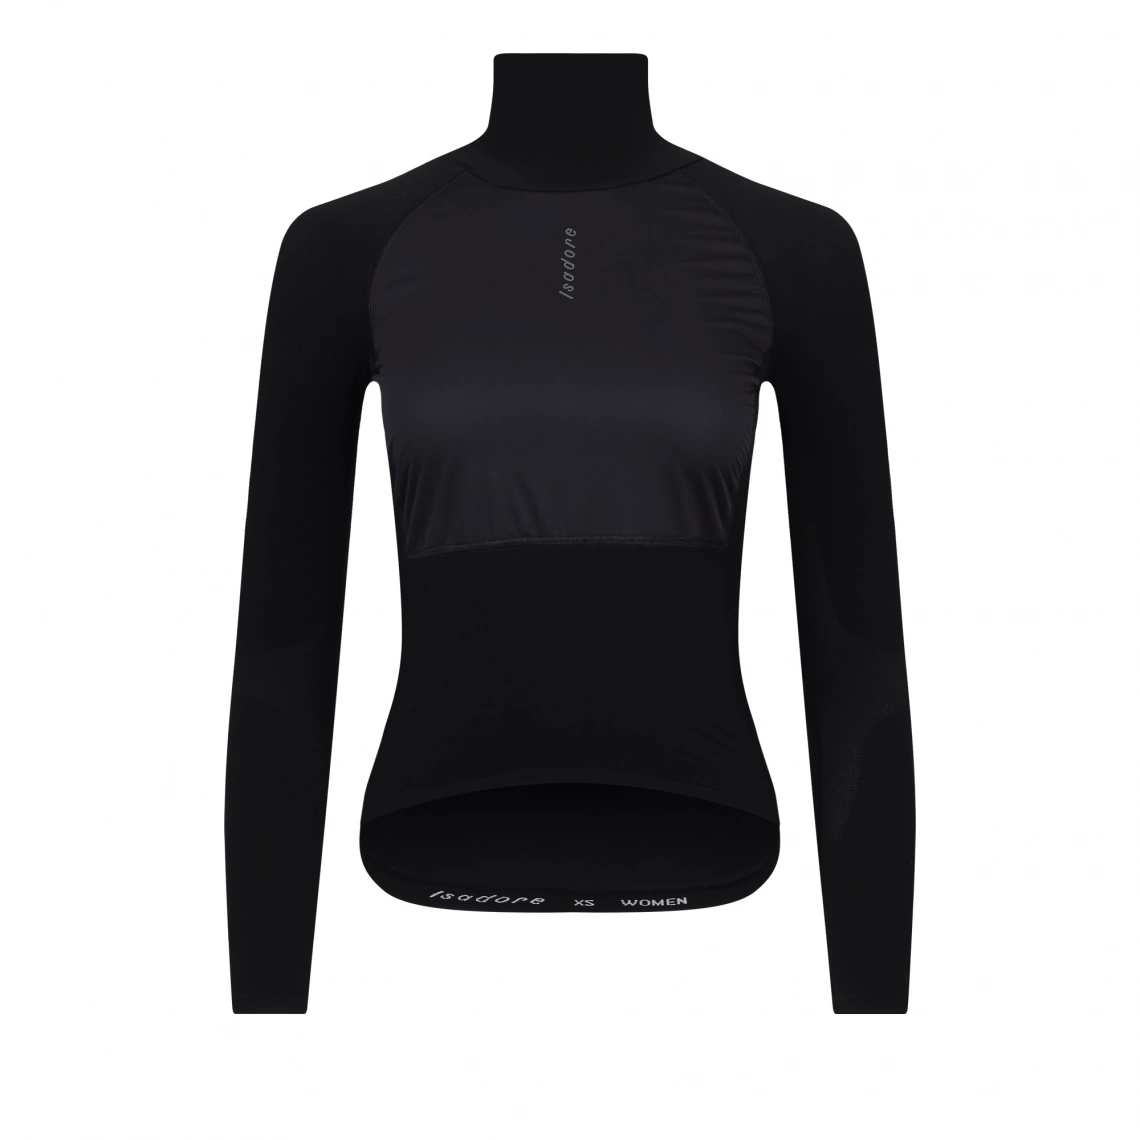 Productfoto van Isadore Winter Wind Block Onderhemd met lange Mouwen Dames - Zwart